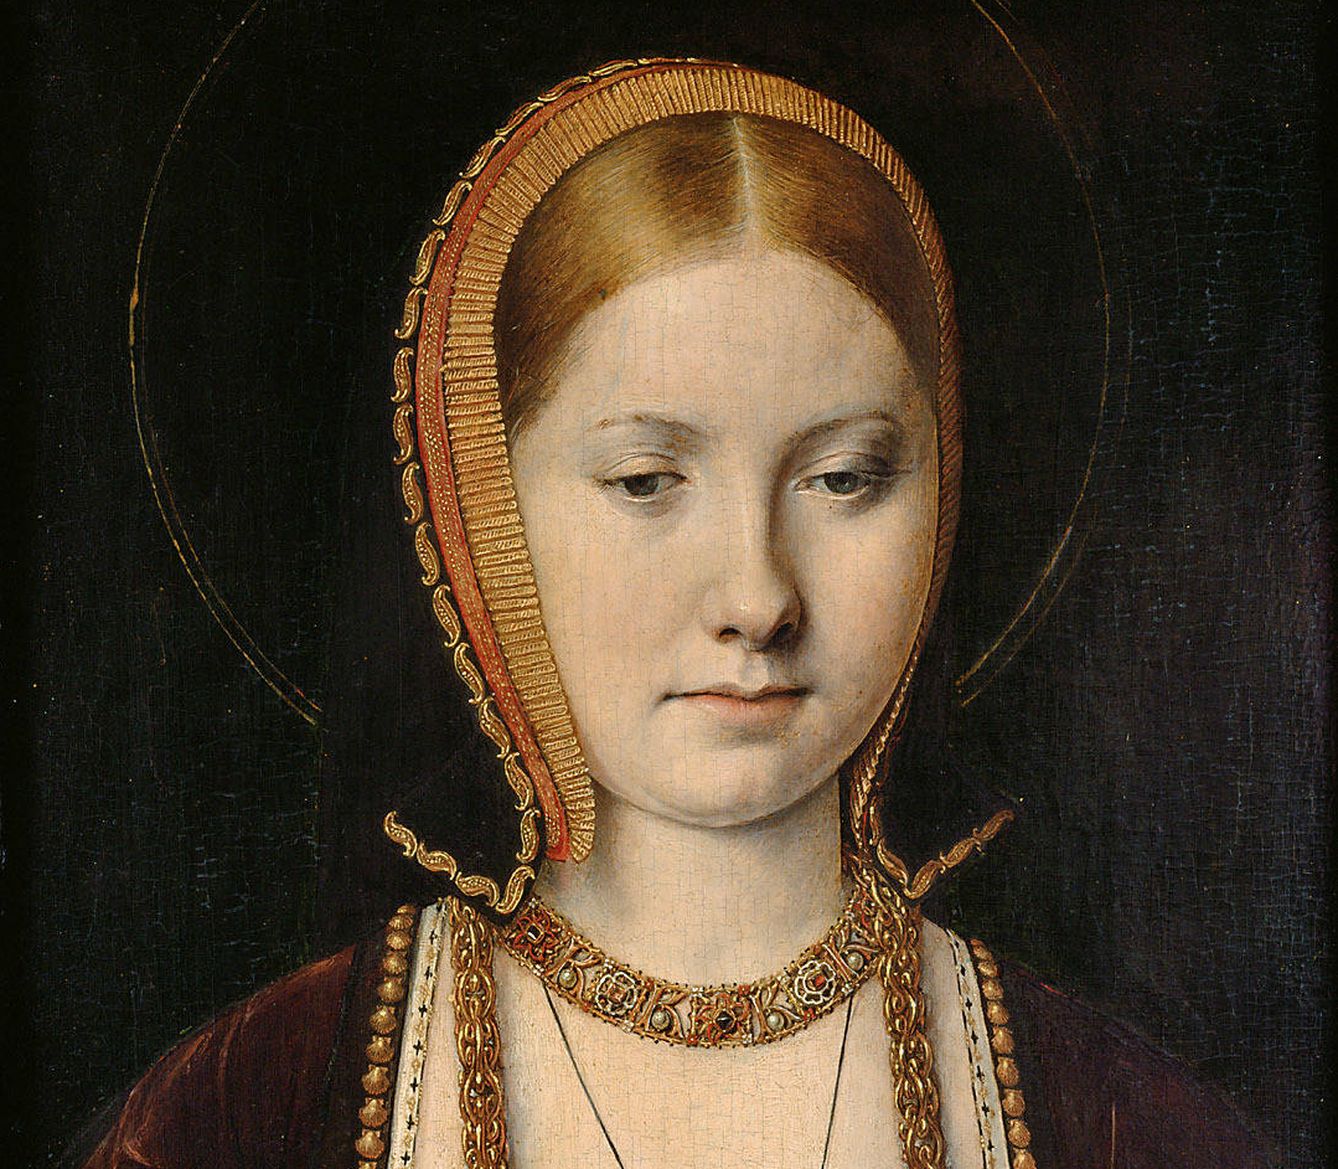 'Retrato de Catalina de Aragón', Michel Sittow, 1514. Kunthistorisches Museum.